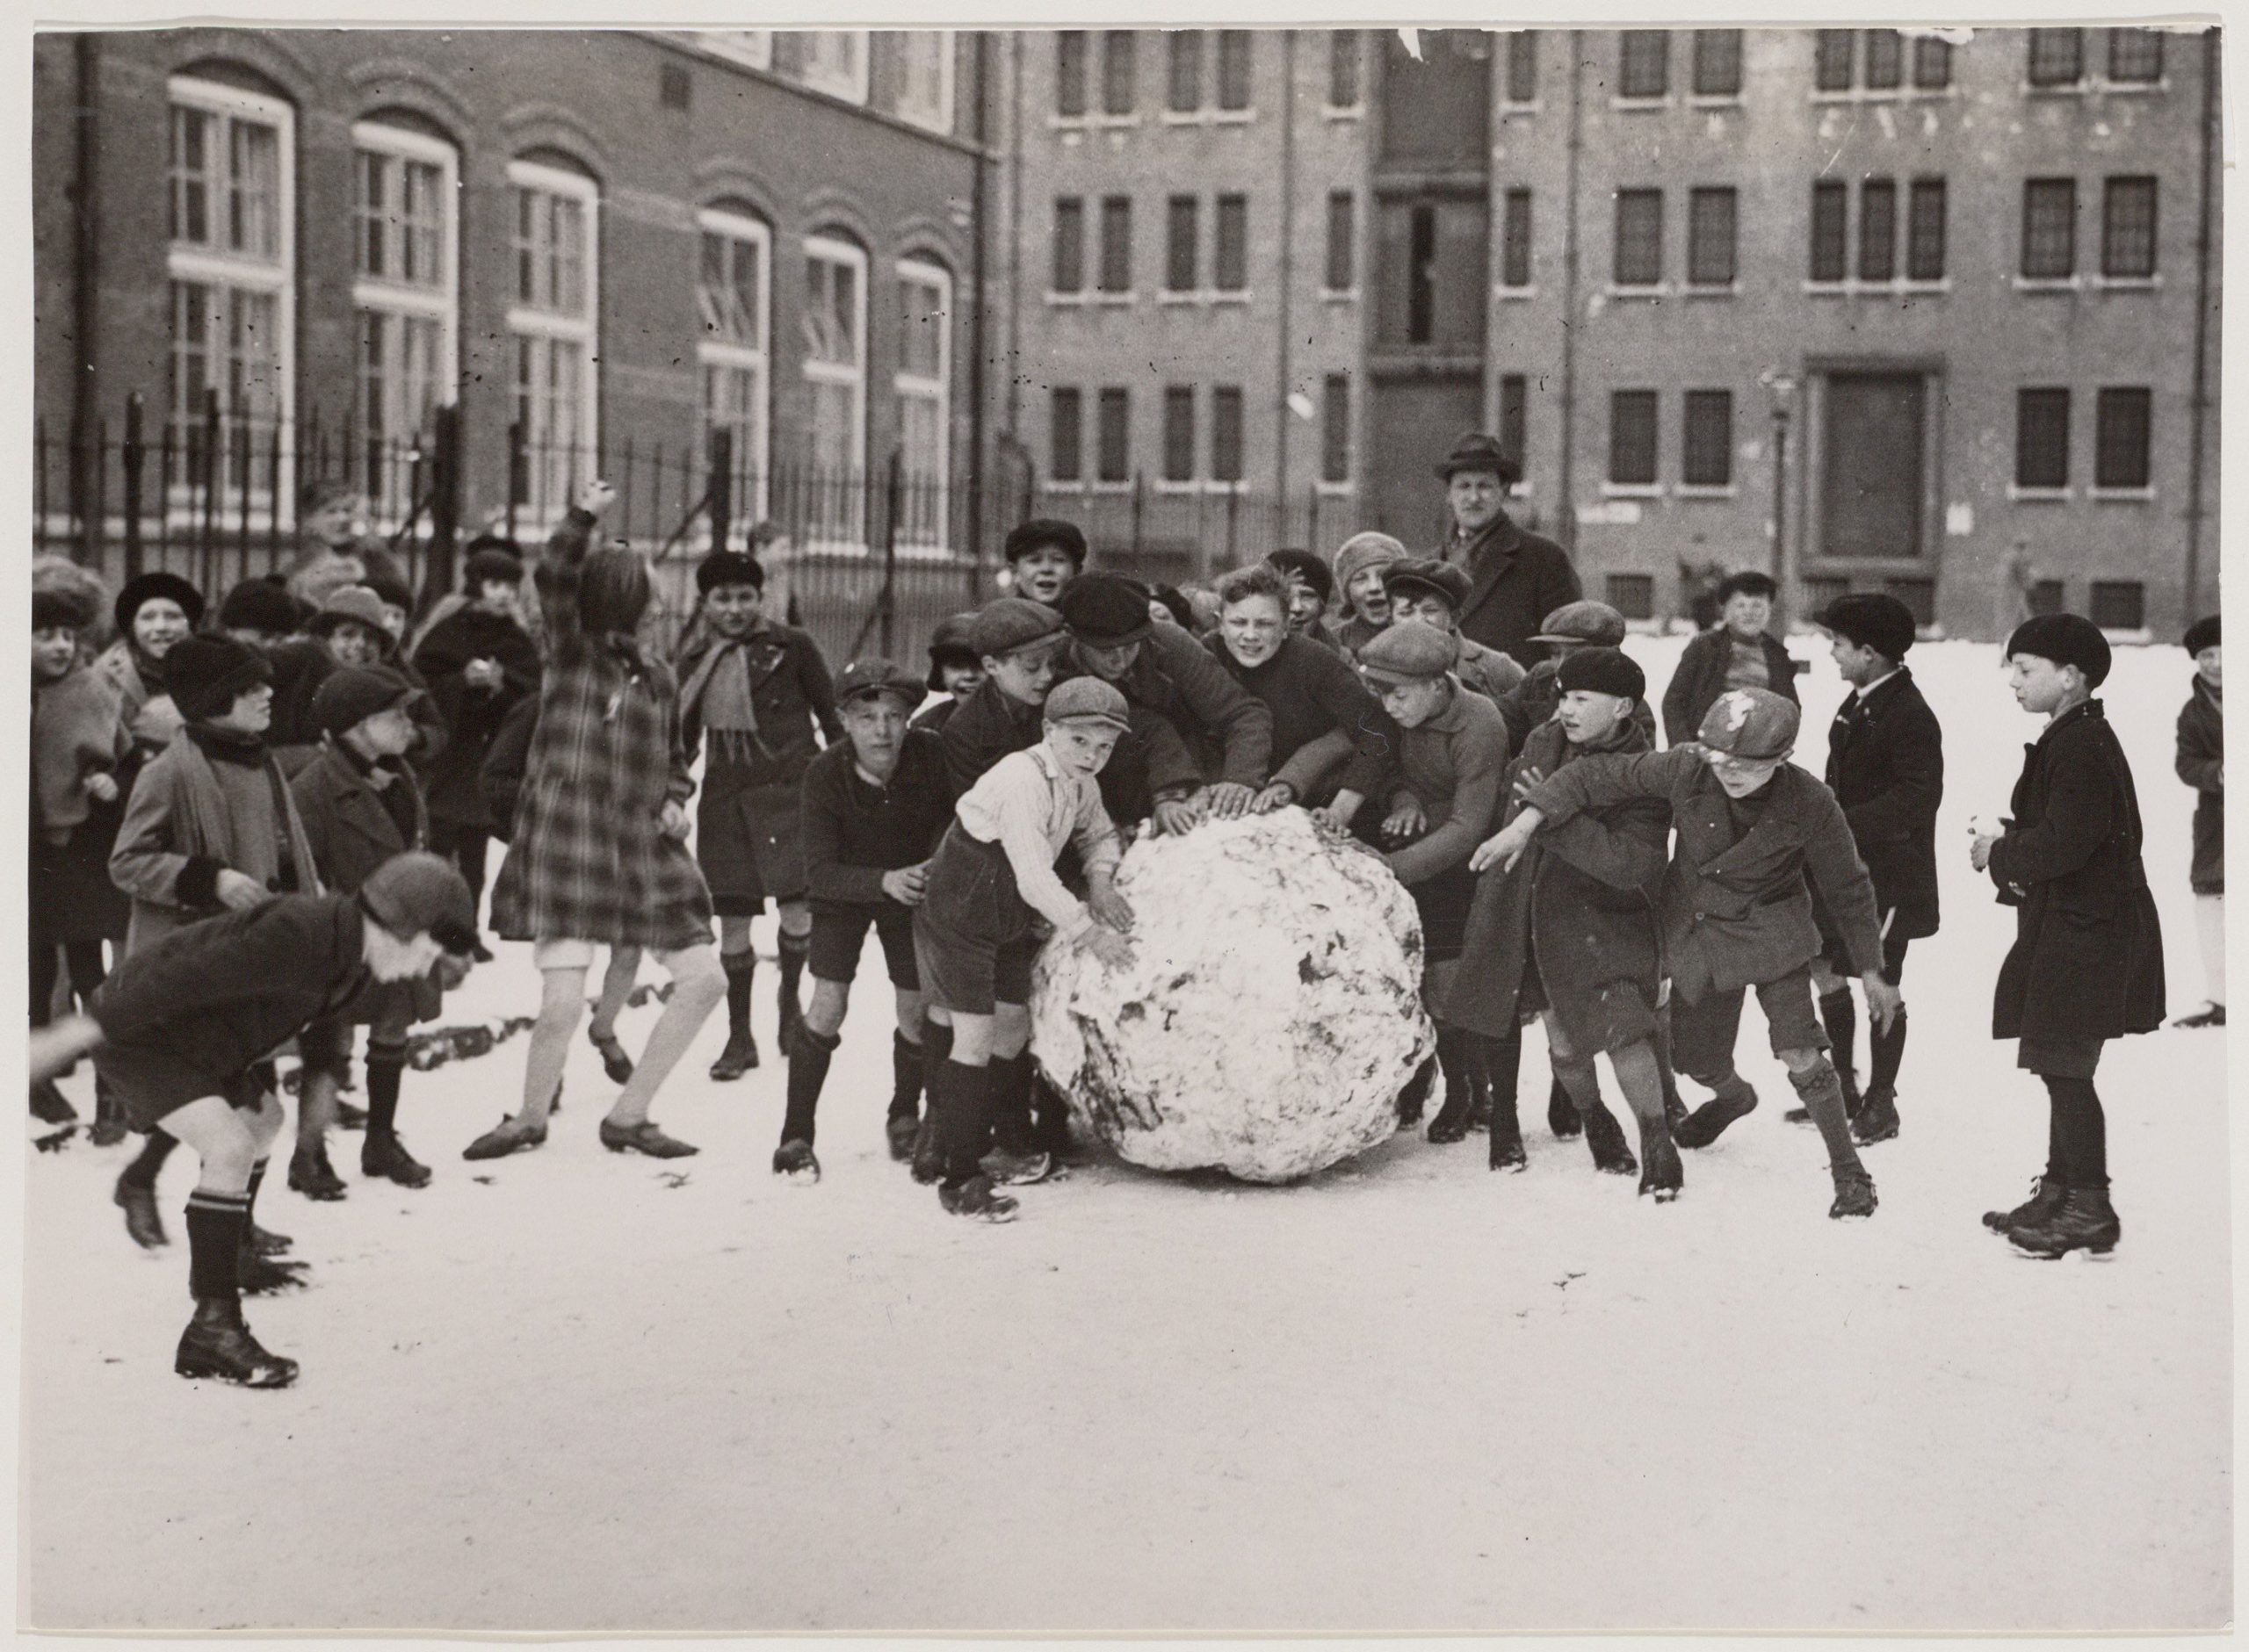 Links: Amsterdamse kinderen spelen in de sneeuw met korte broek in maart, 1931. Rechts: het resultaat na inkleuren met MyHeritage In Color. (bron: Collectie Stadsarchief Amsterdam, vervaardiger Vereenigde Fotobureau N.V.; auteursrechtvrij)